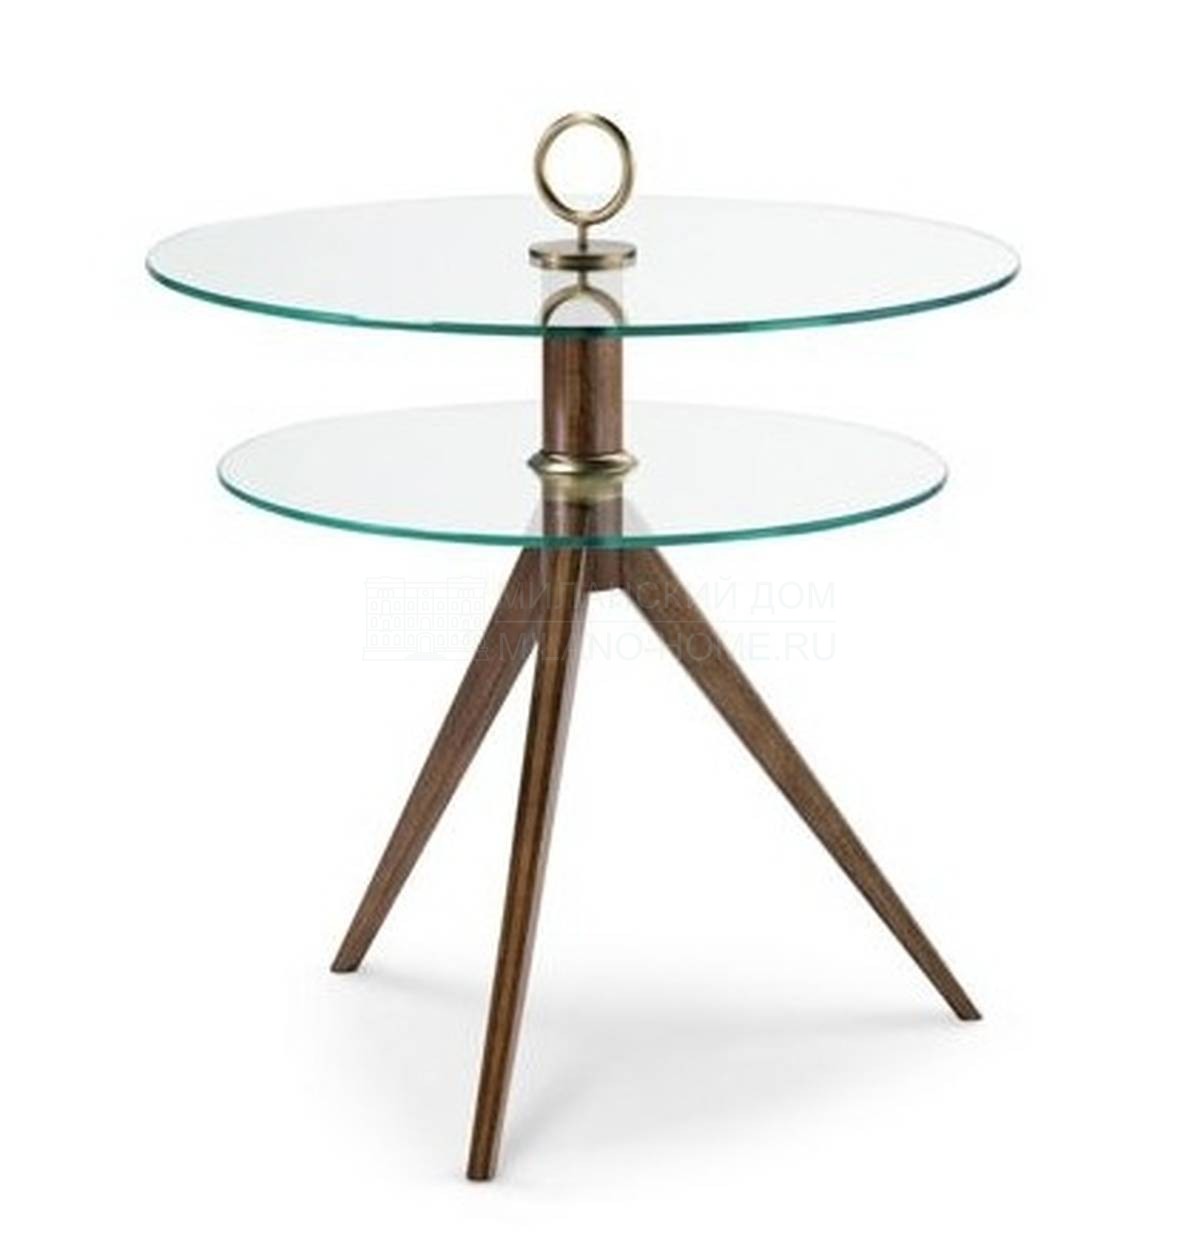 Кофейный столик Reze round coffee table из Франции фабрики ROCHE BOBOIS